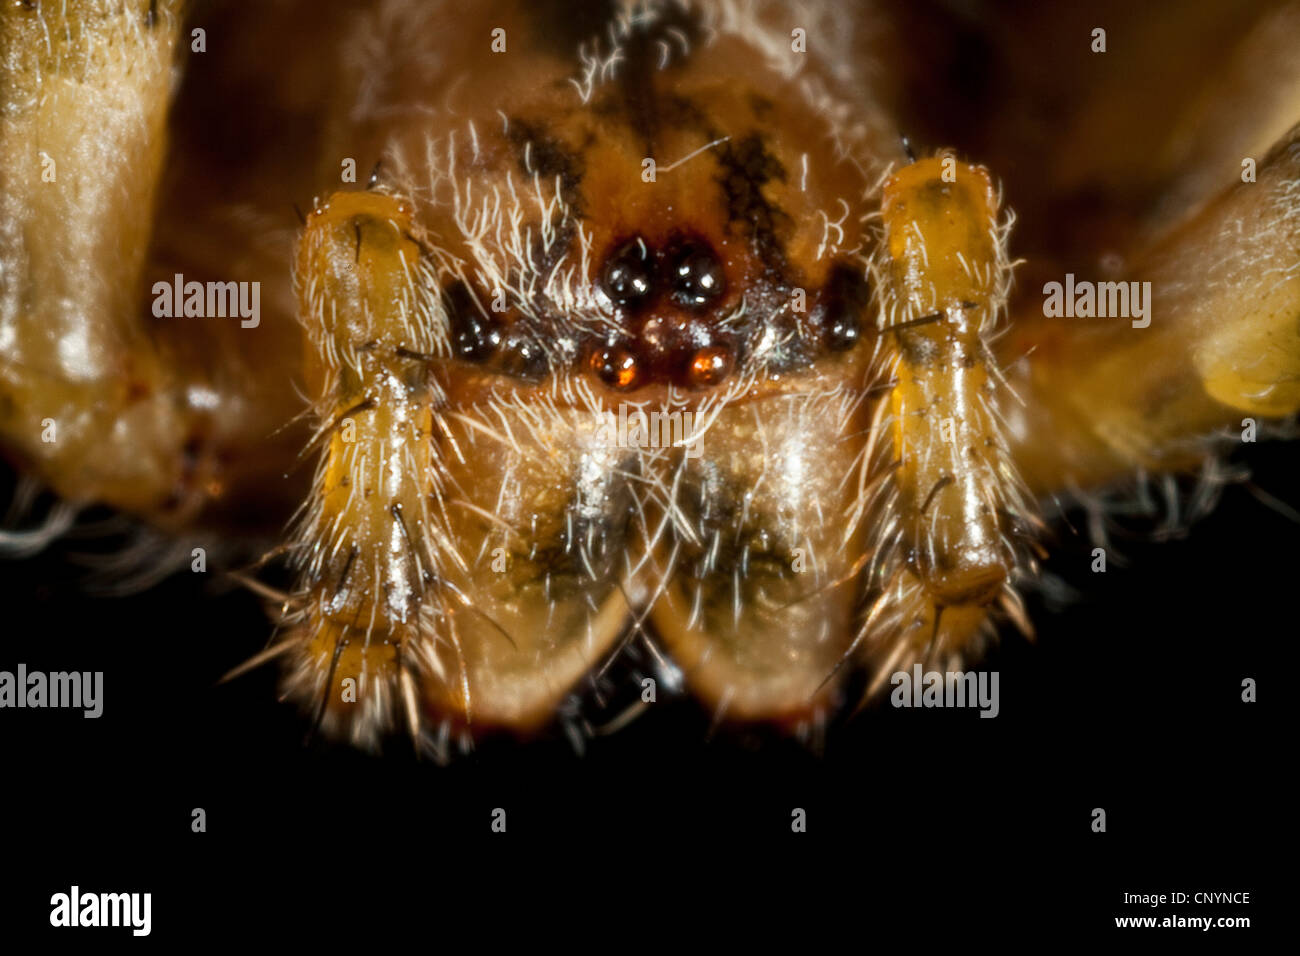 Croce orbweaver, giardino europeo spider, cross spider (Araneus diadematus), ritratto, 8 occhi e chelicerae, Germania Foto Stock